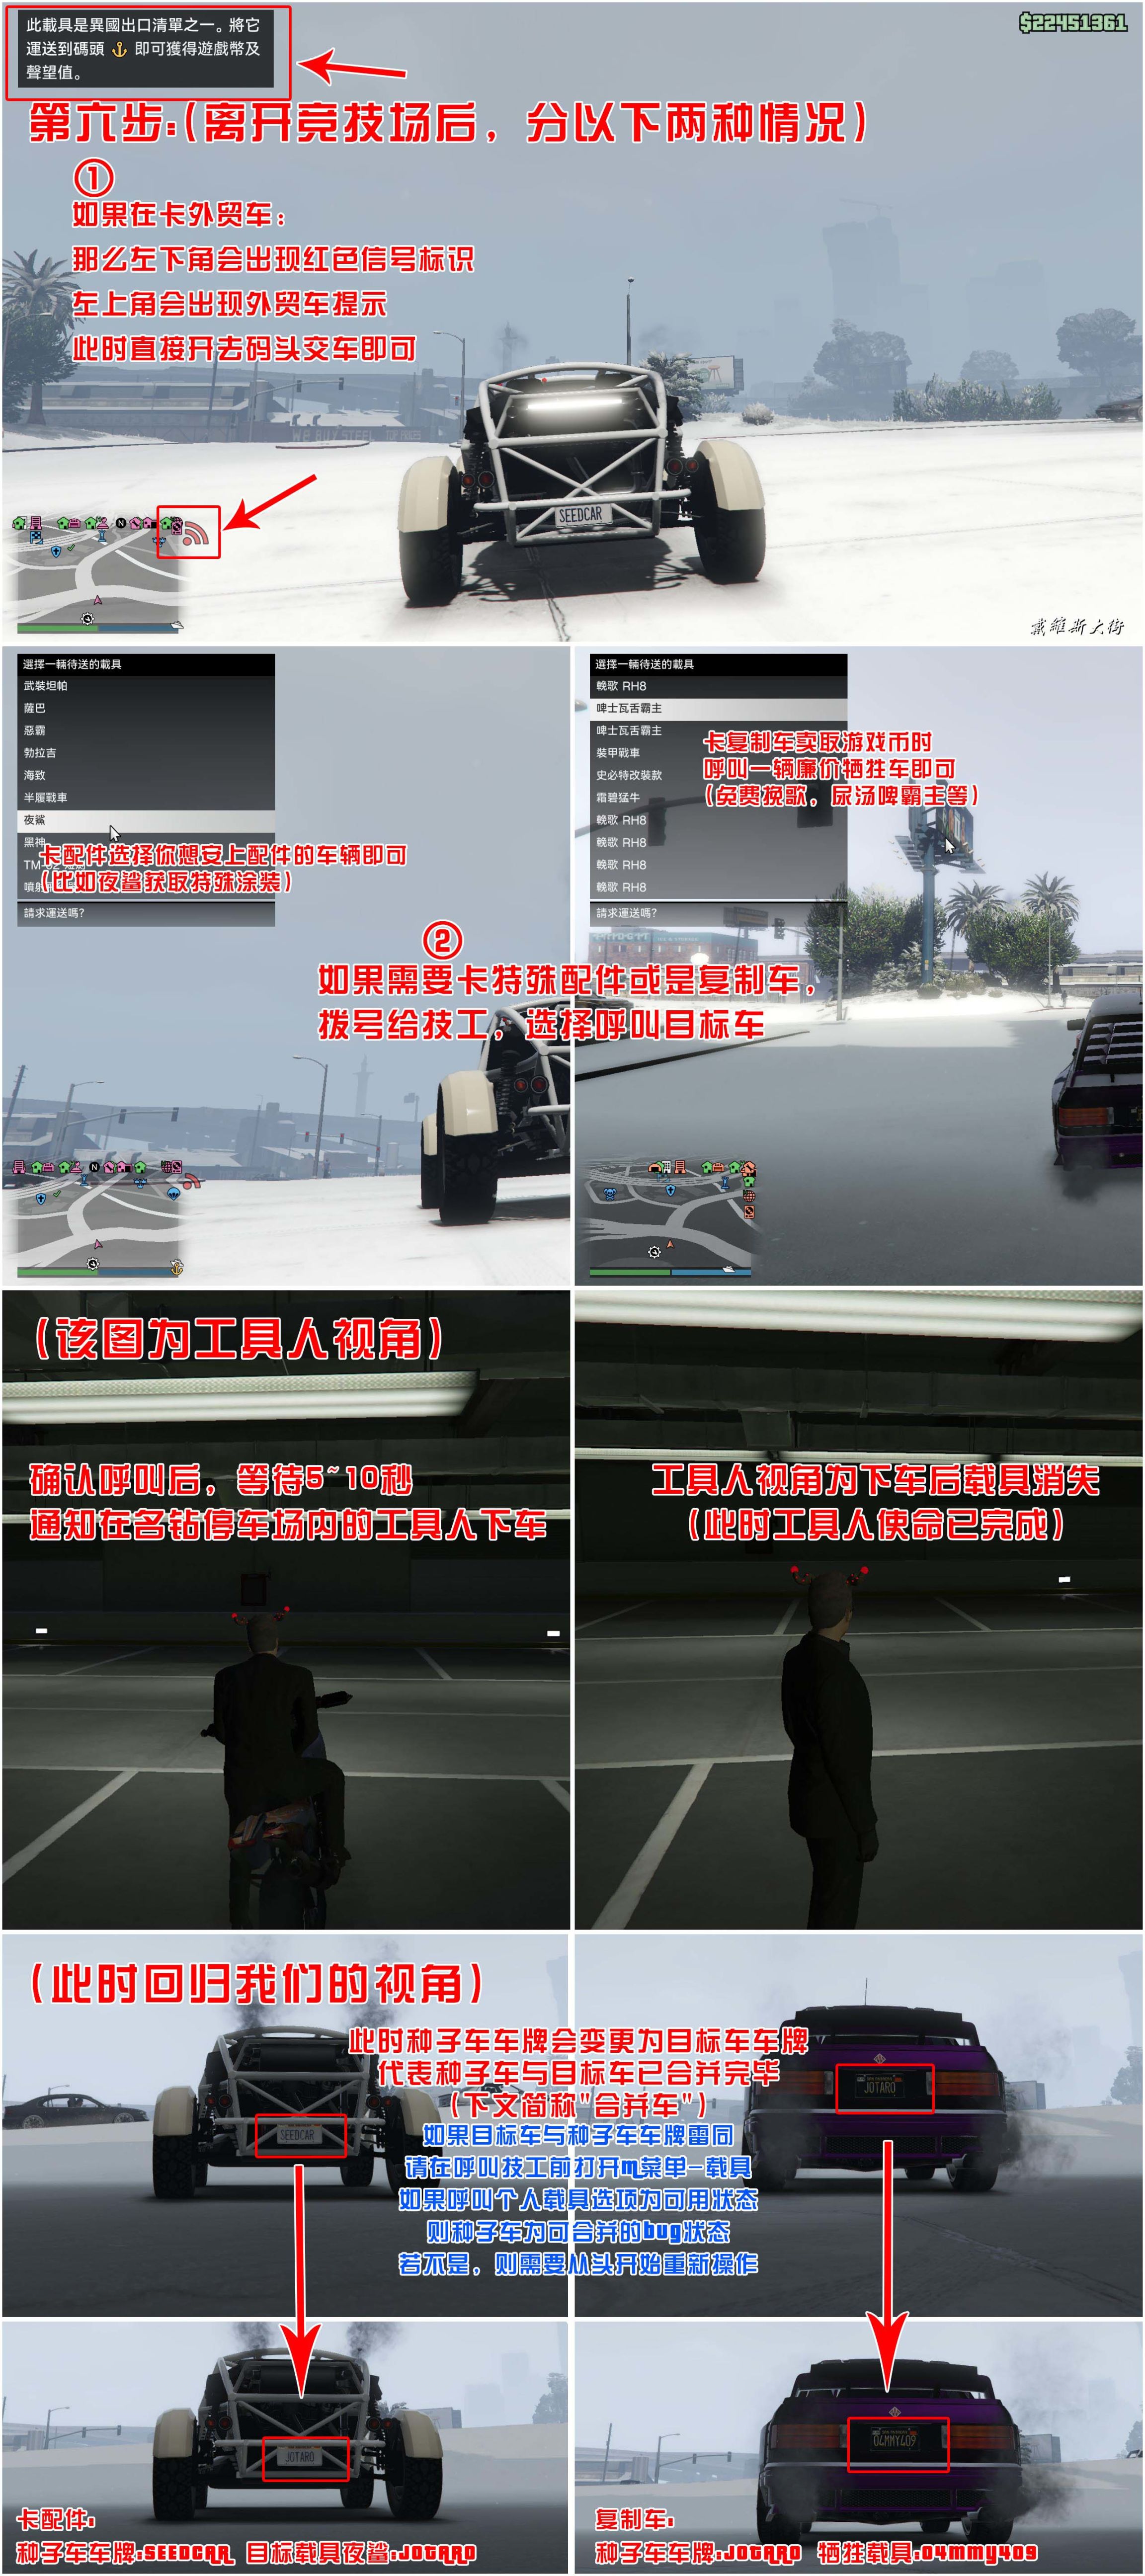 【侠盗猎车手5】GTA 在线模式攻略：获取载具隐藏涂装&复制车&变造外贸载具-第6张